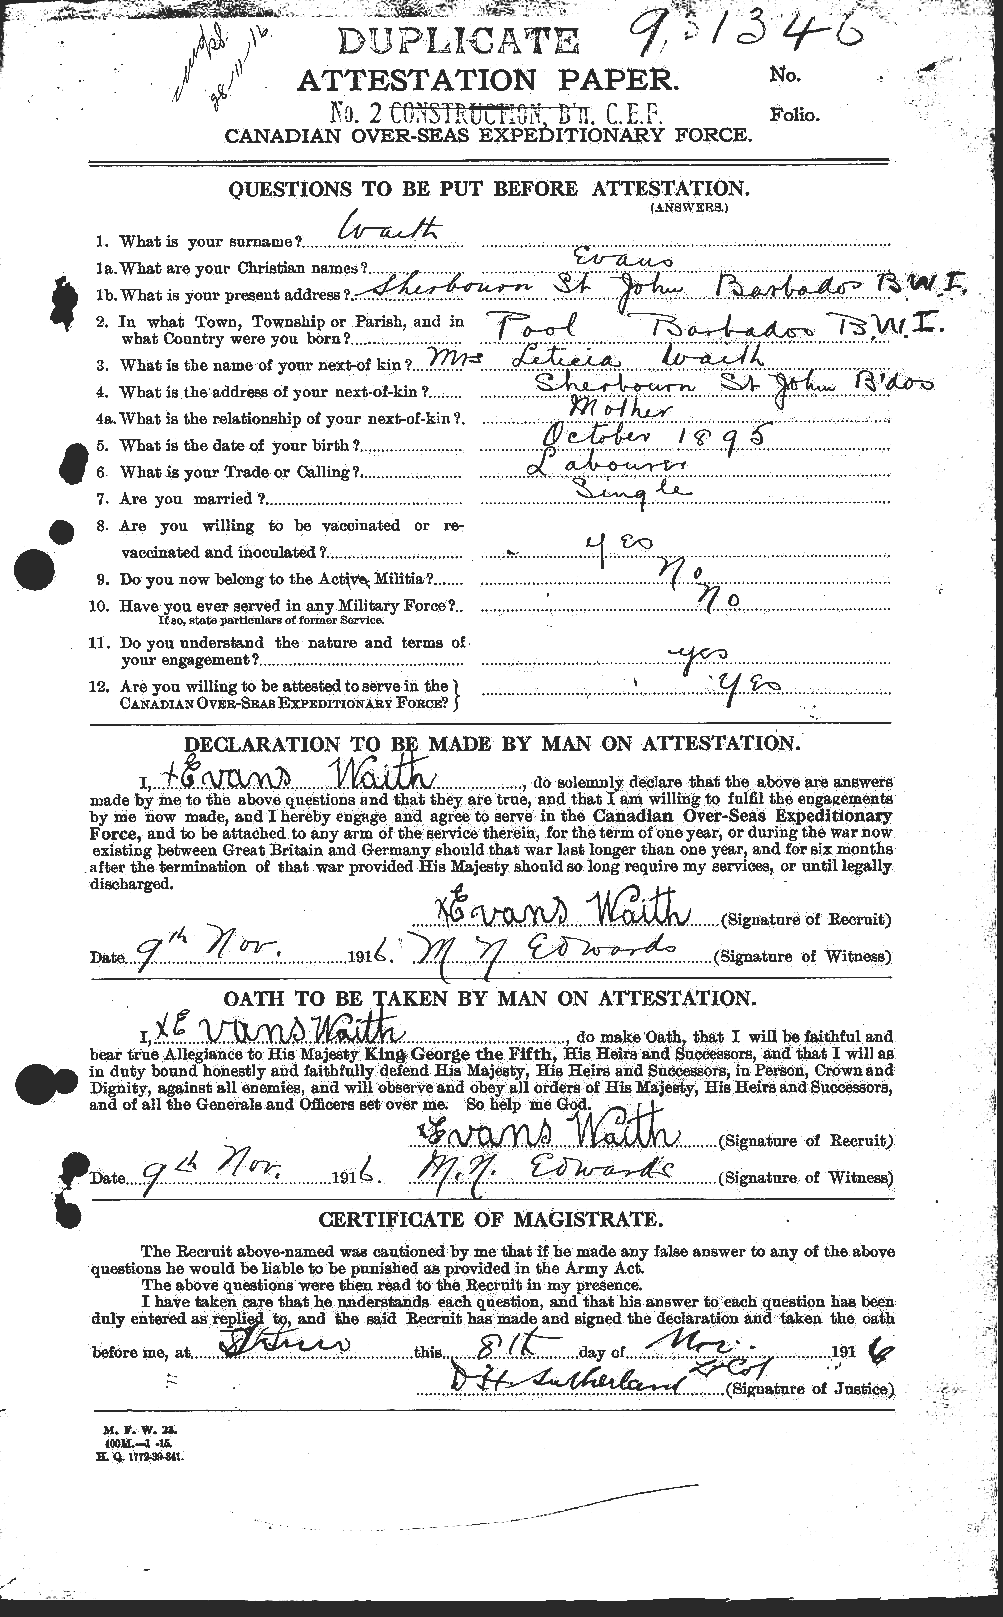 Dossiers du Personnel de la Première Guerre mondiale - CEC 654335a